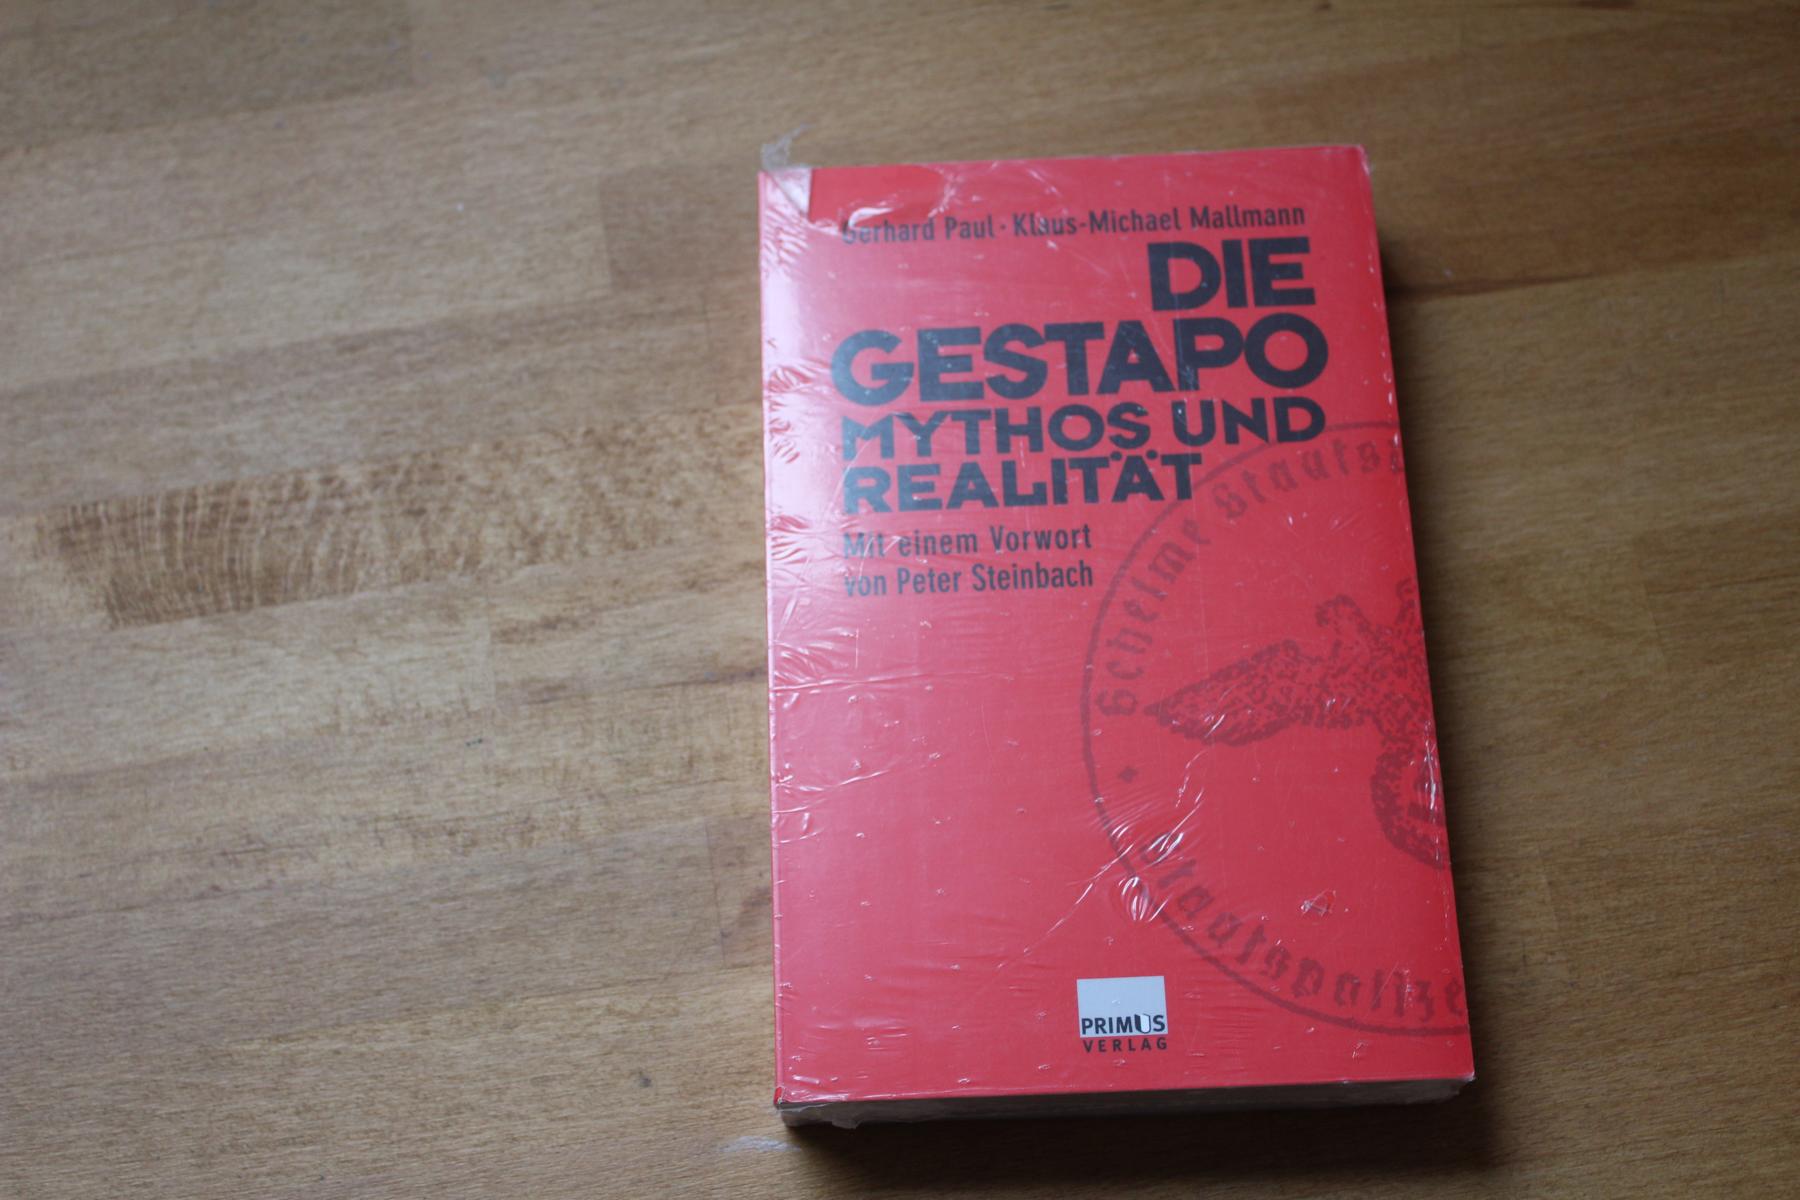 Die Gestapo. Mythos und Realität. Mit einem Vorwort von Peter Steinbach. - Paul, Gerhard; Mallmann, Klaus-Michael